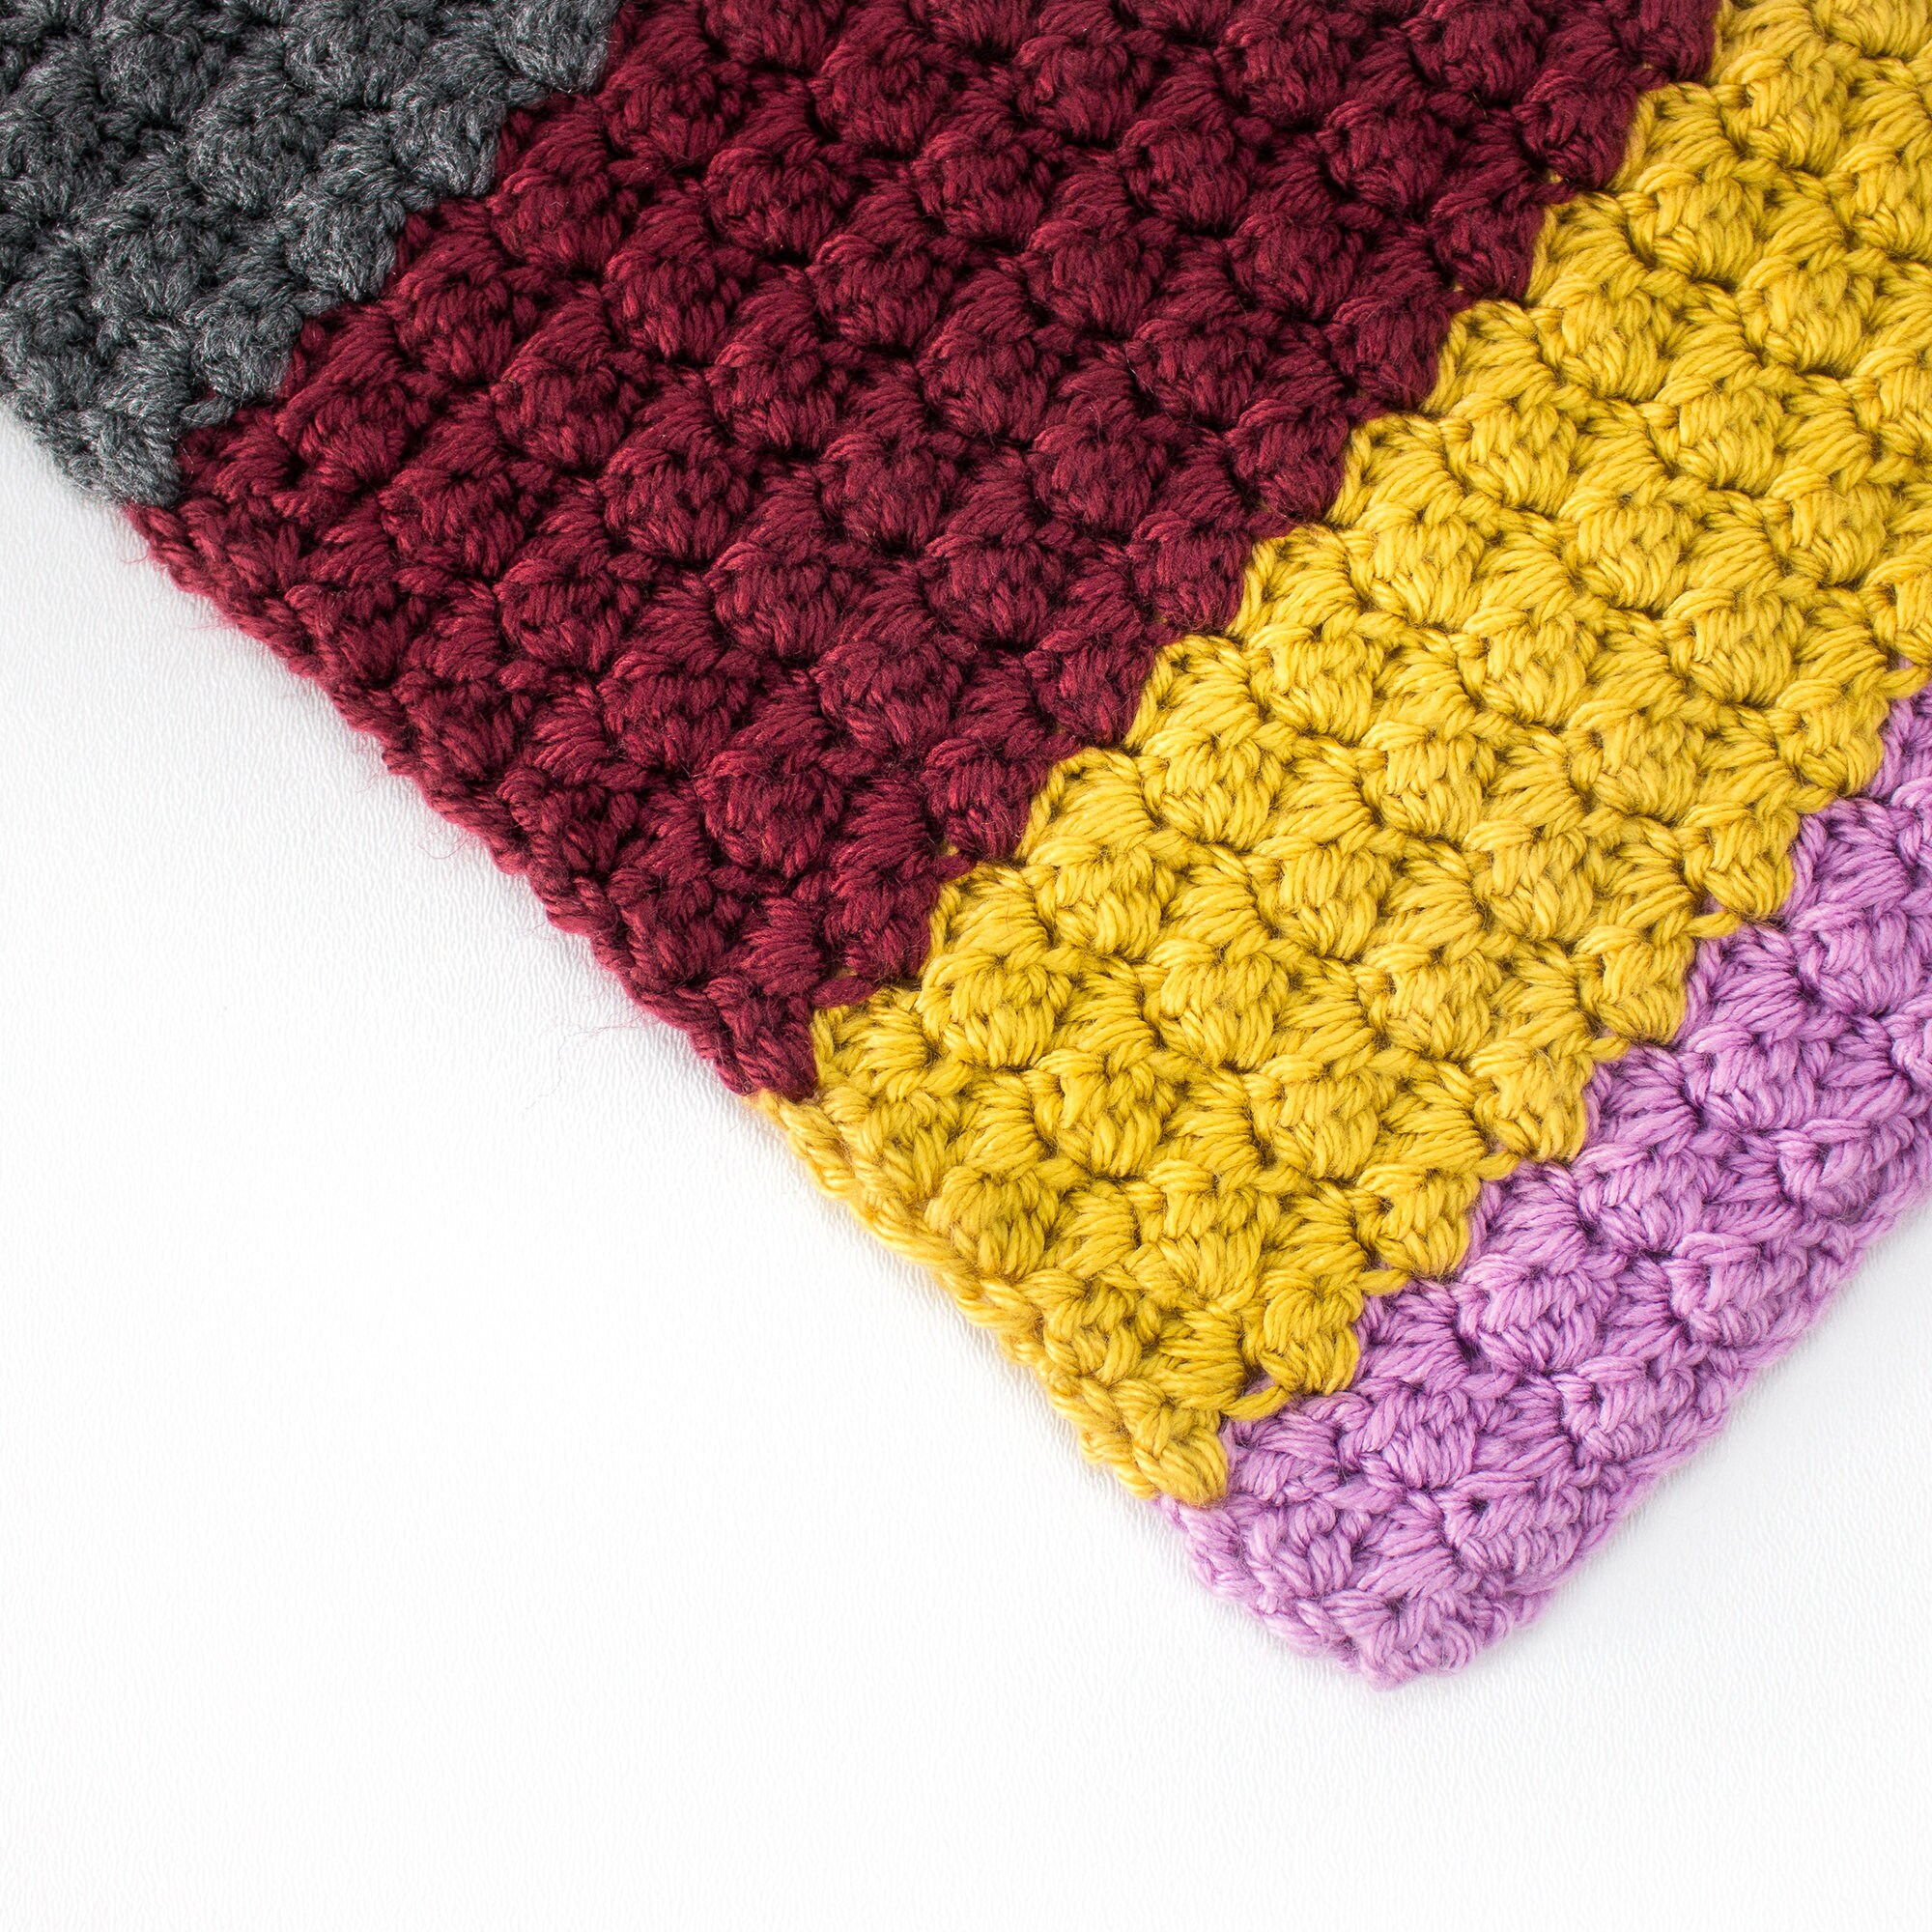 Boho Rainbow Mesh Stitch Crochet Blanket